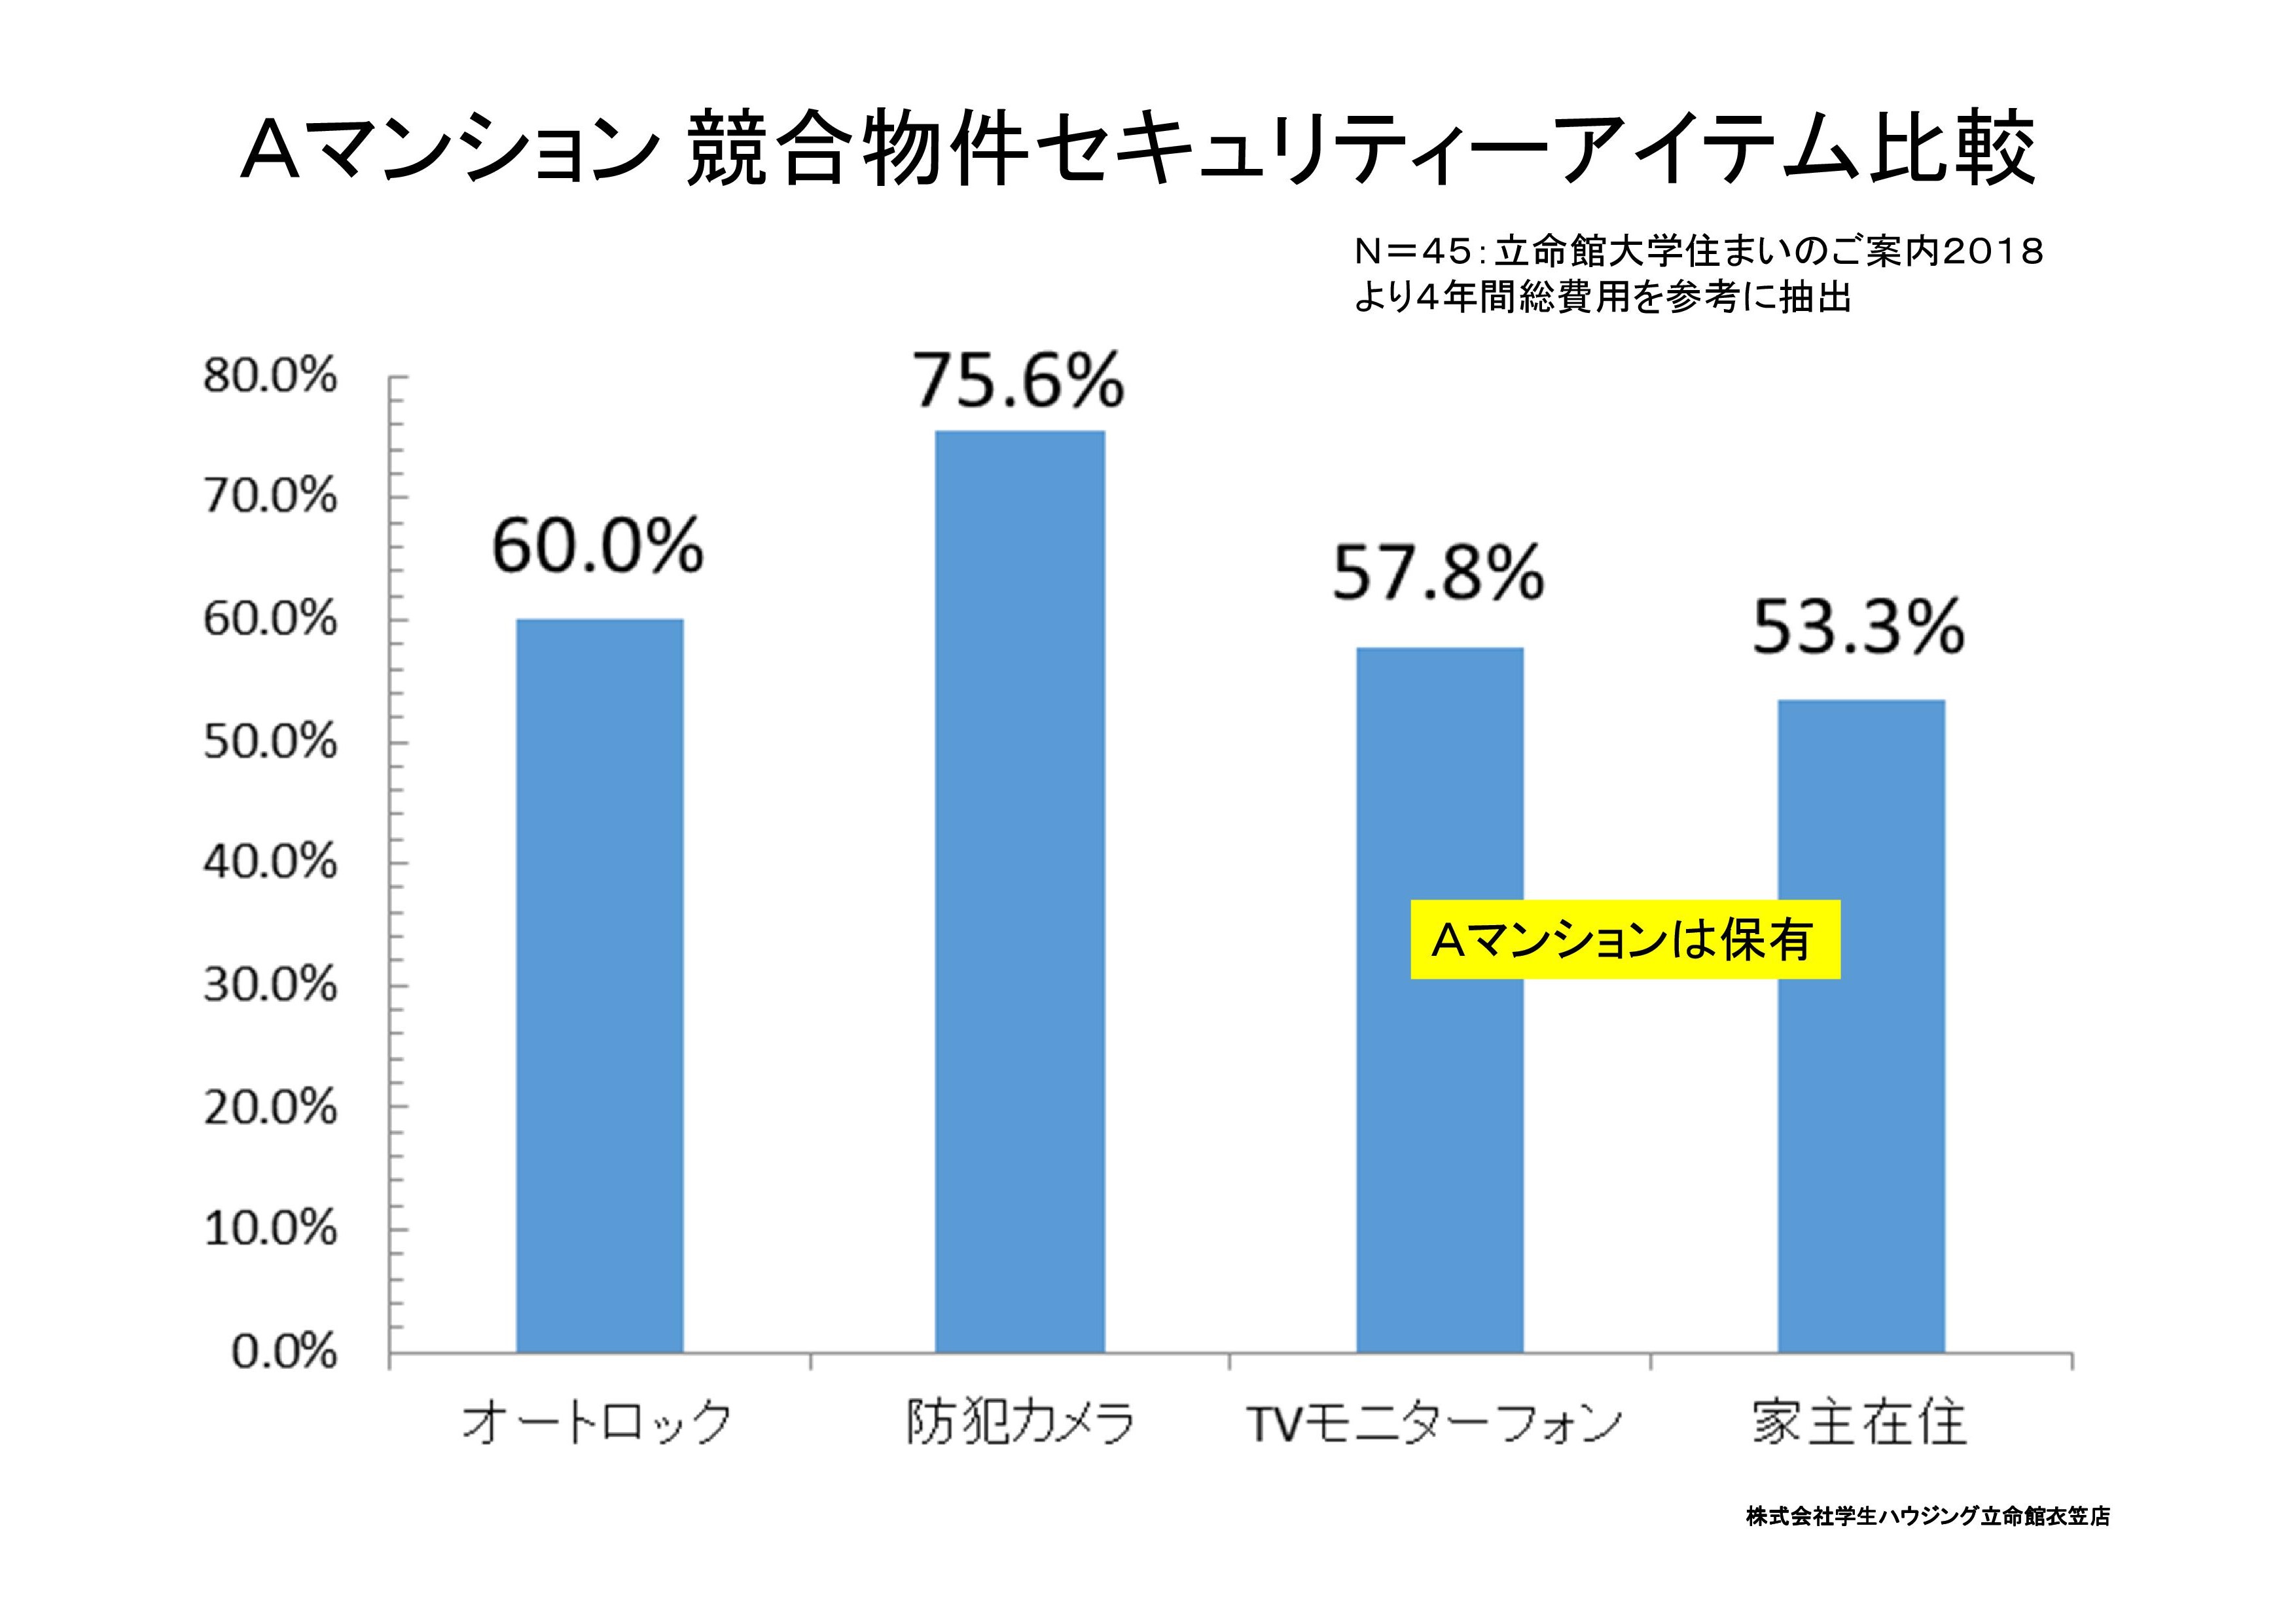 http://www.3215.co.jp/blog/images/A%E7%89%A9%E4%BB%B6%20%E9%98%B2%E7%8A%AF%E3%82%AB%E3%83%A1%E3%83%A9%E5%B0%8E%E5%85%A5%E6%A4%9C%E8%A8%8E-001.jpg